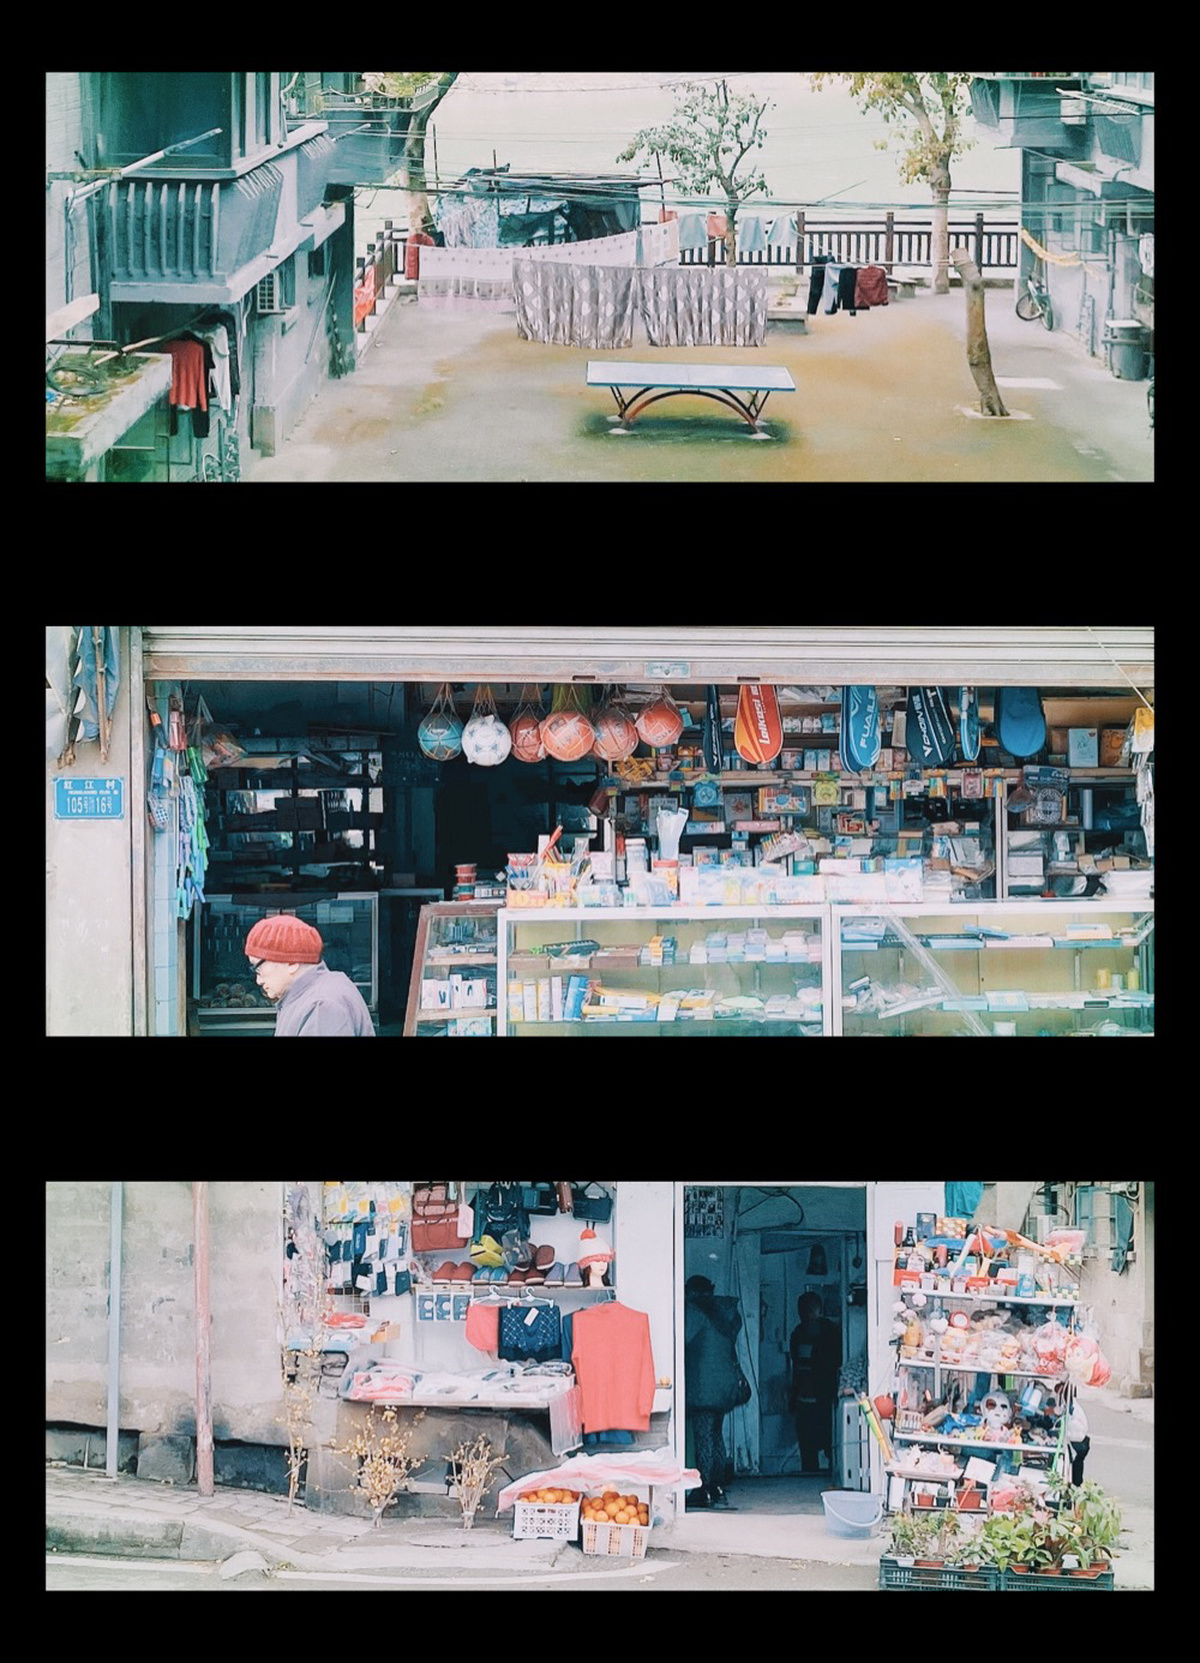 一系列照片展示一个男人在市场购物